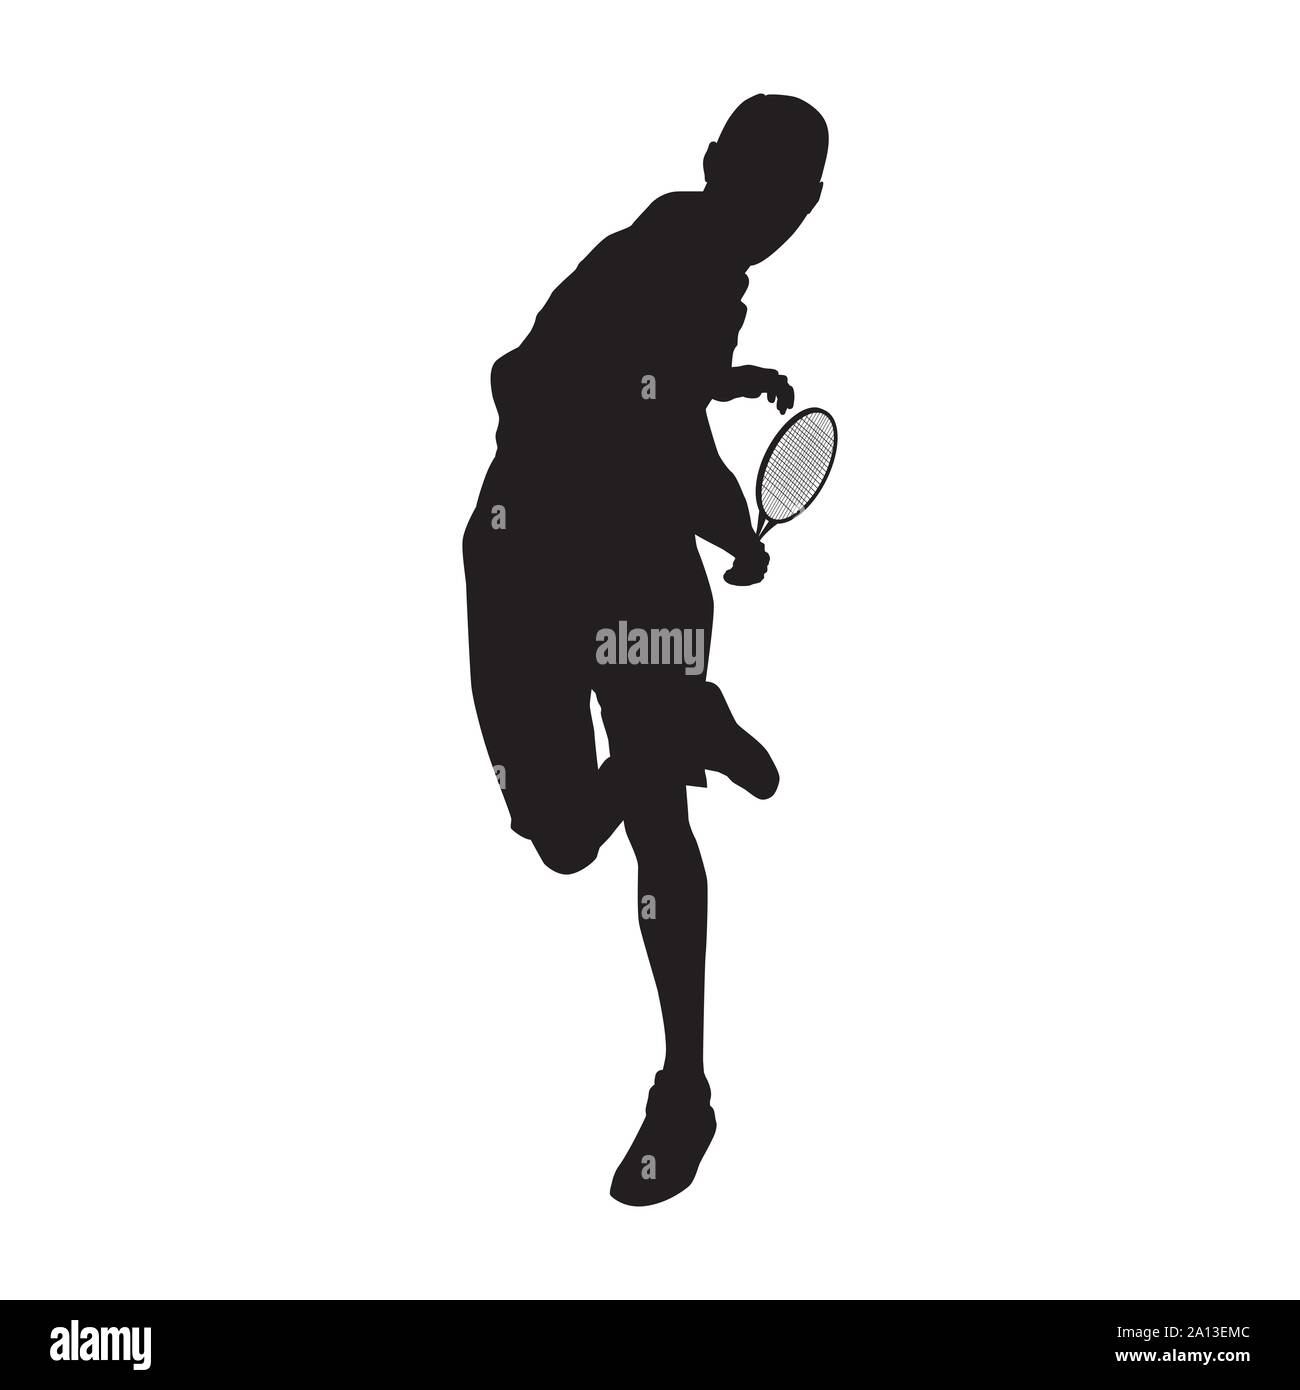 Tennis Player schwarze Silhouette auf weißem Hintergrund, Vector Illustration Stock Vektor